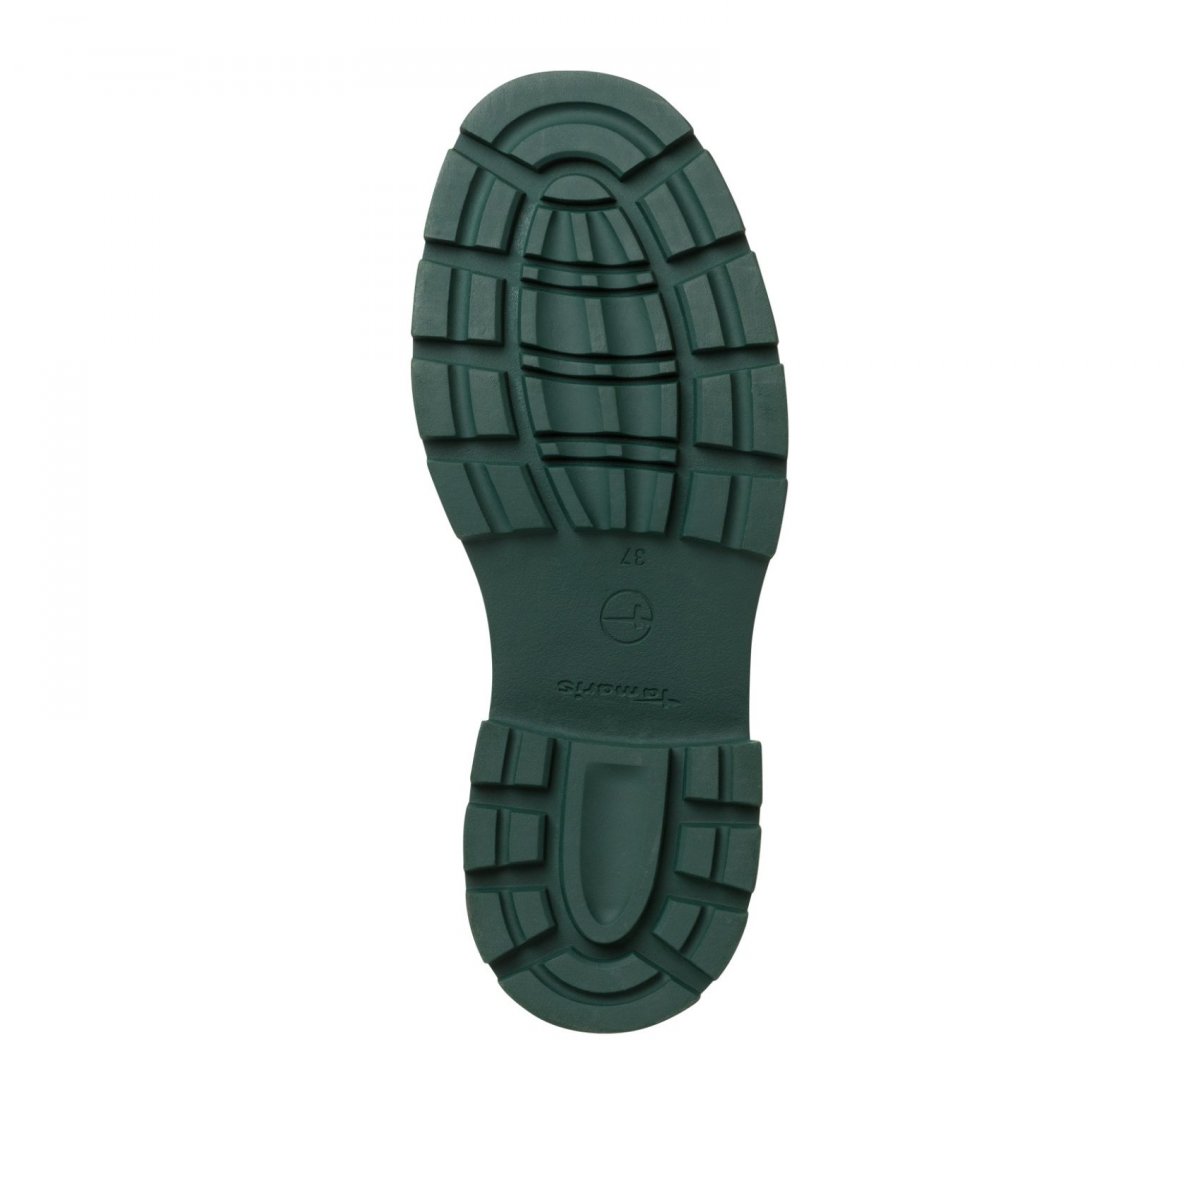 detail Dámská kotníková obuv Tamaris 25405-29 071 černá/zelená